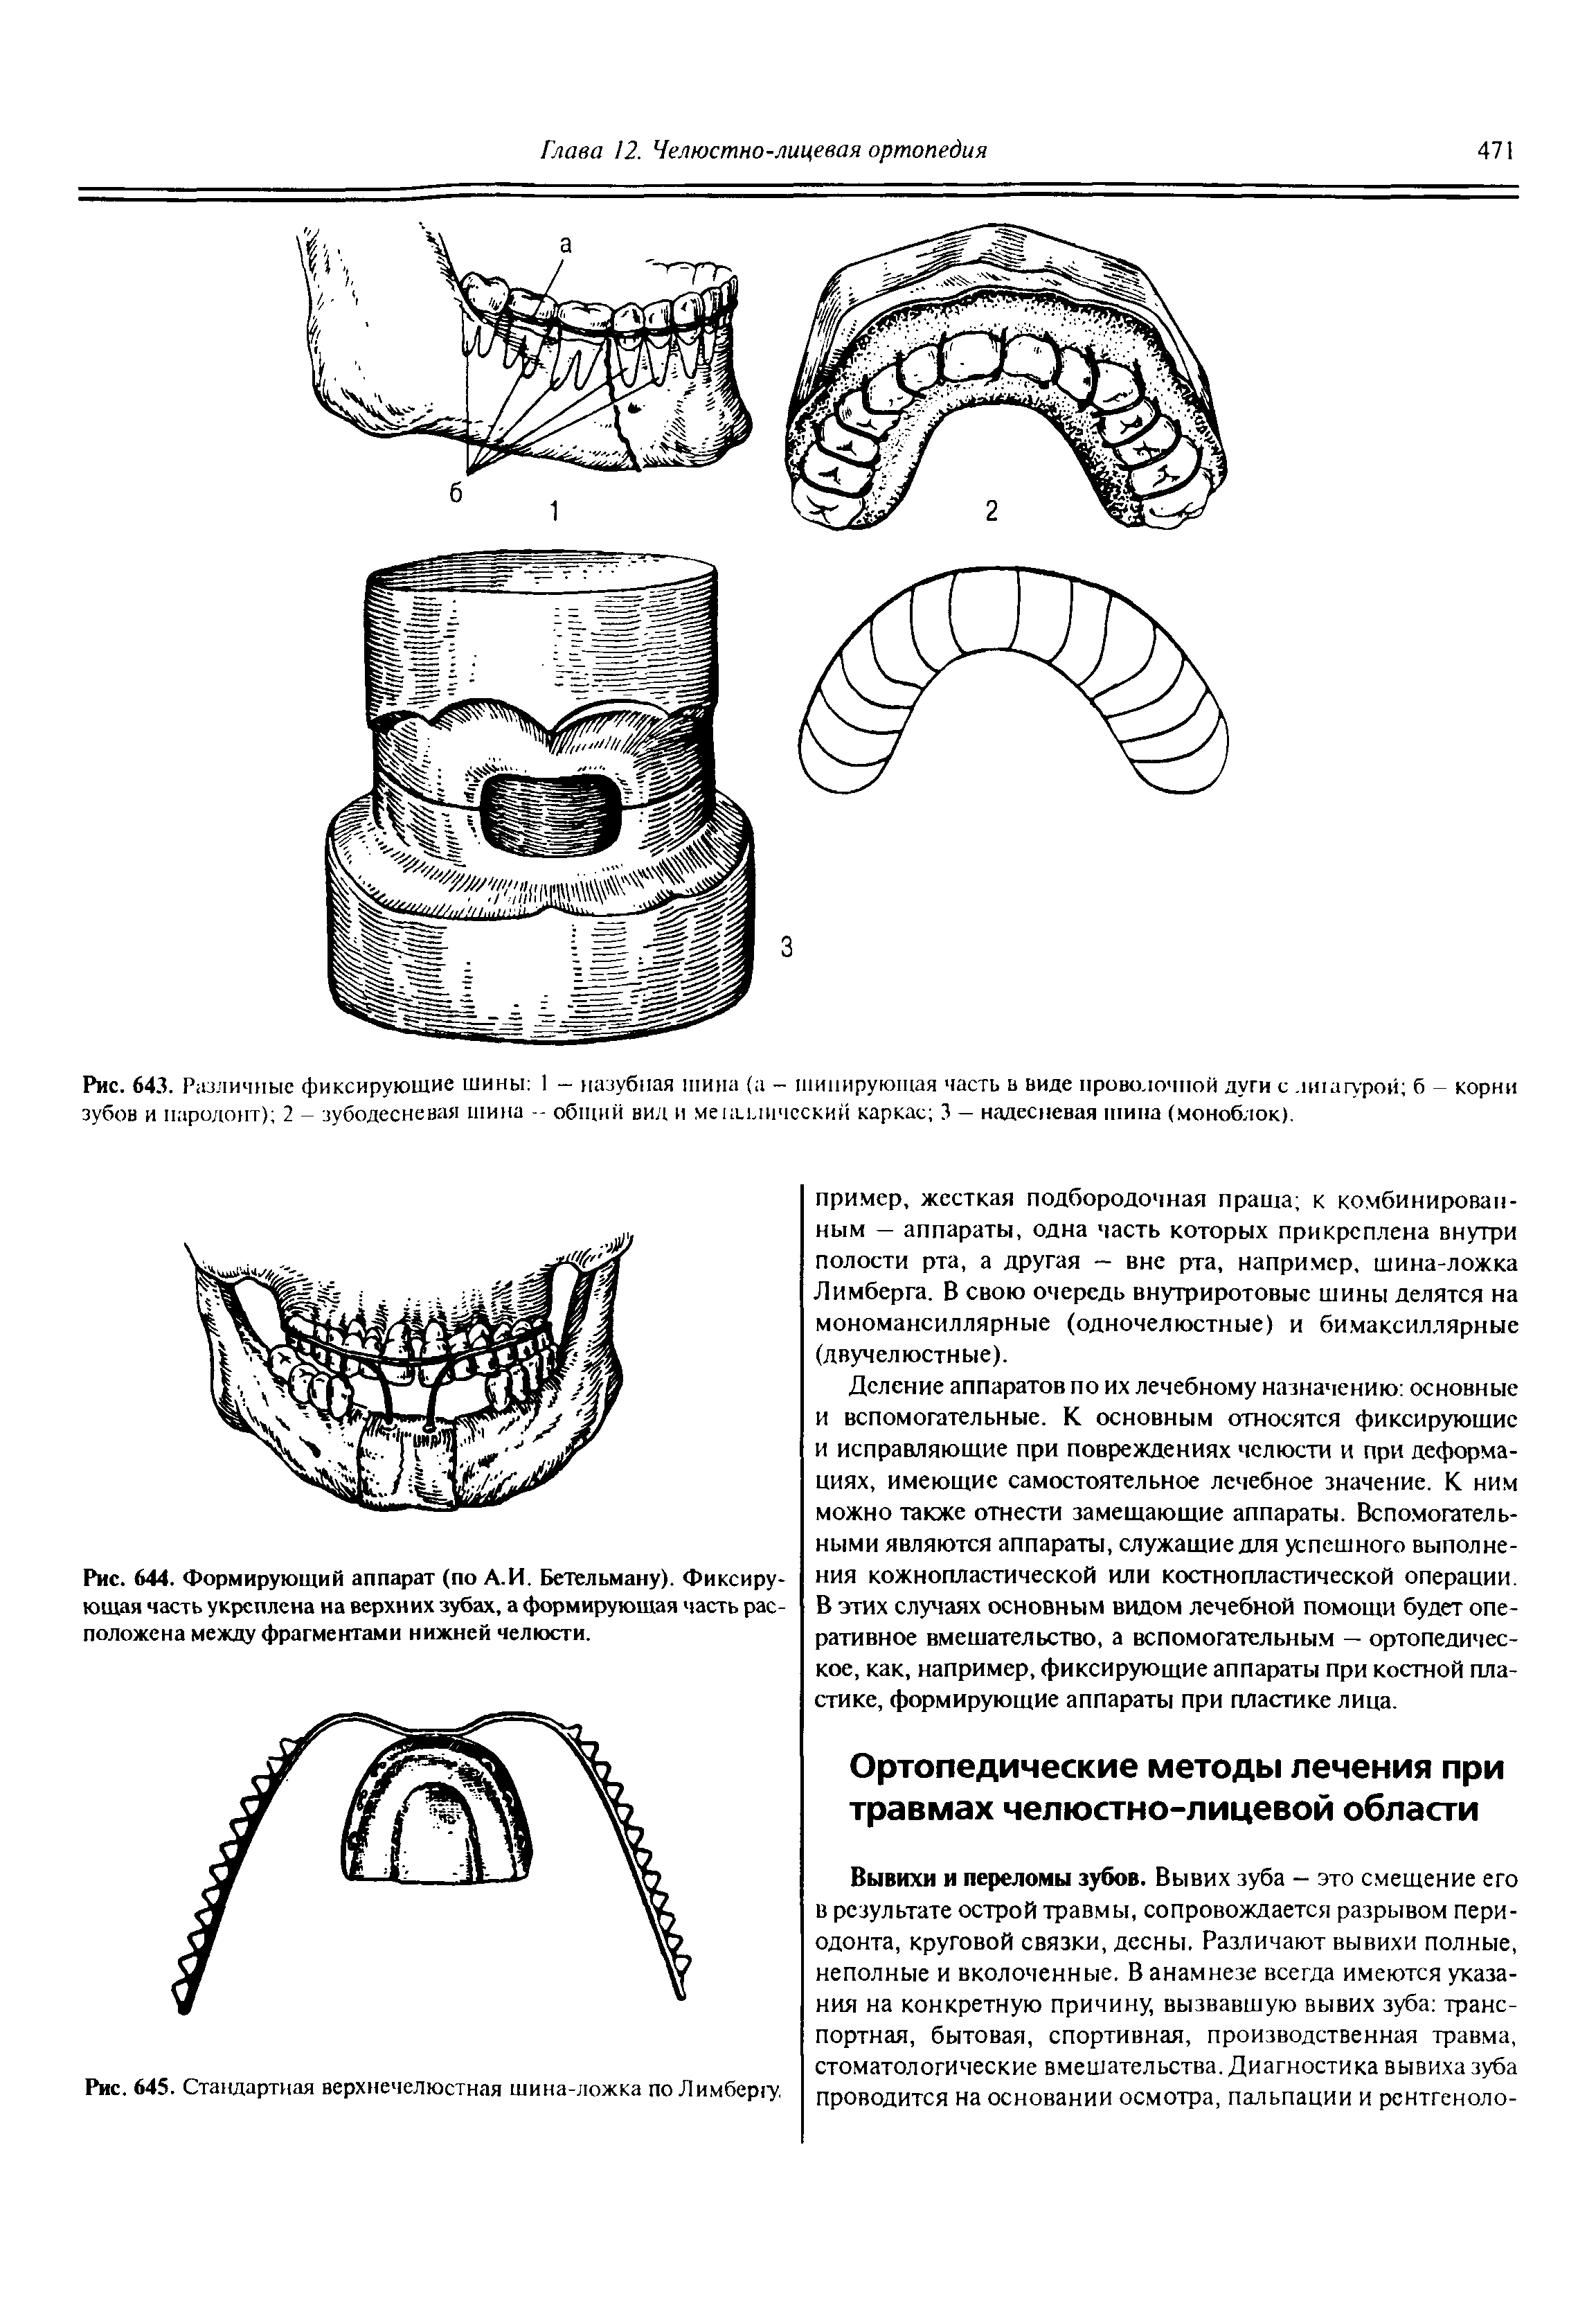 Рис. 644. Формирующий аппарат (по А.И. Бетельману). Фиксирующая часть укреплена на верхних зубах, а формирующая часть расположена между фрагментами нижней челюсти.